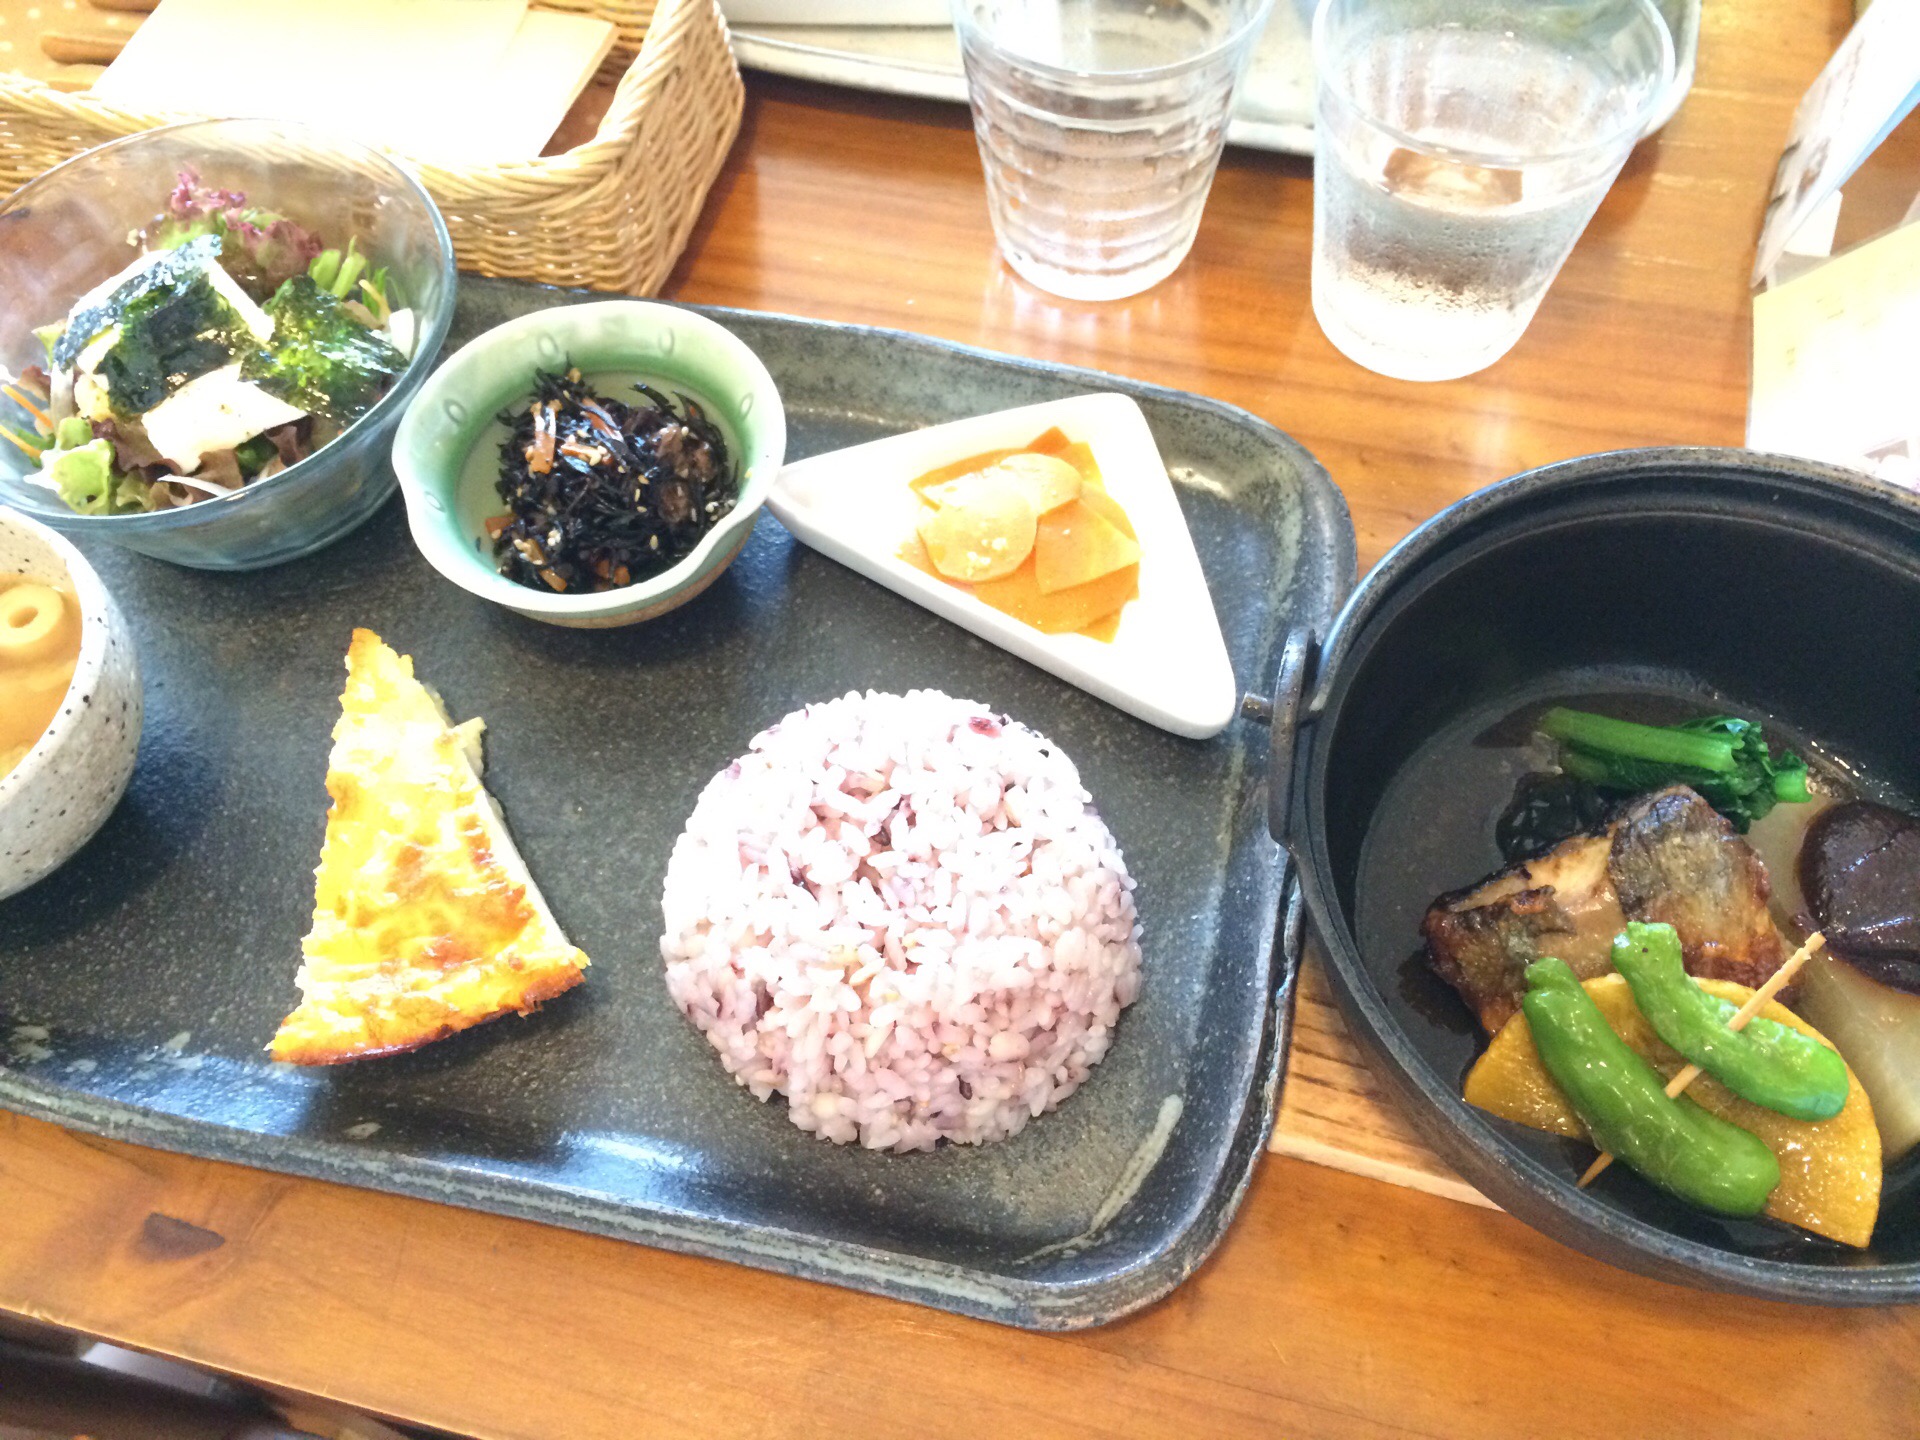 琵琶湖を眺めながら食事が出来るお洒落なカフェ♪煮込みプレートセットが特にオススメです♪